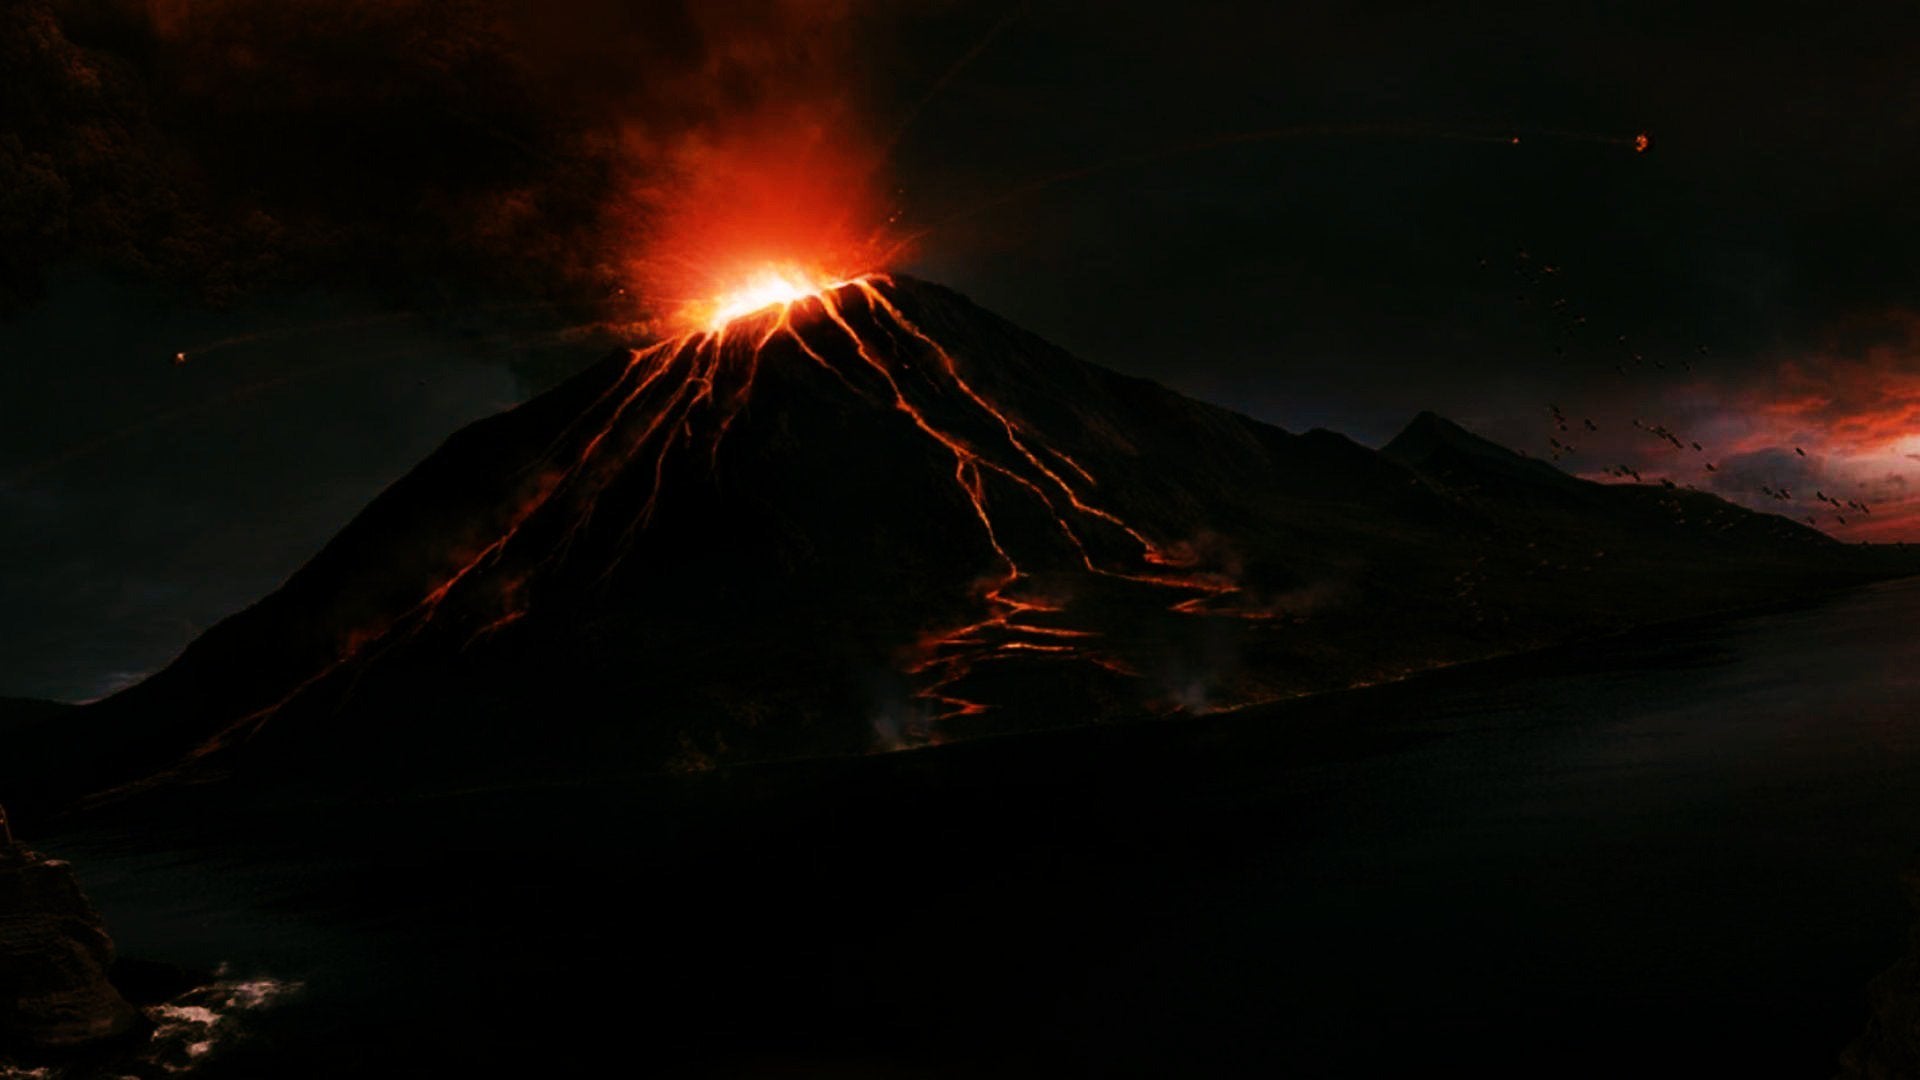 عکس بزرگترین کوه آتشفشان فعال در جهان مخصوص Instagram